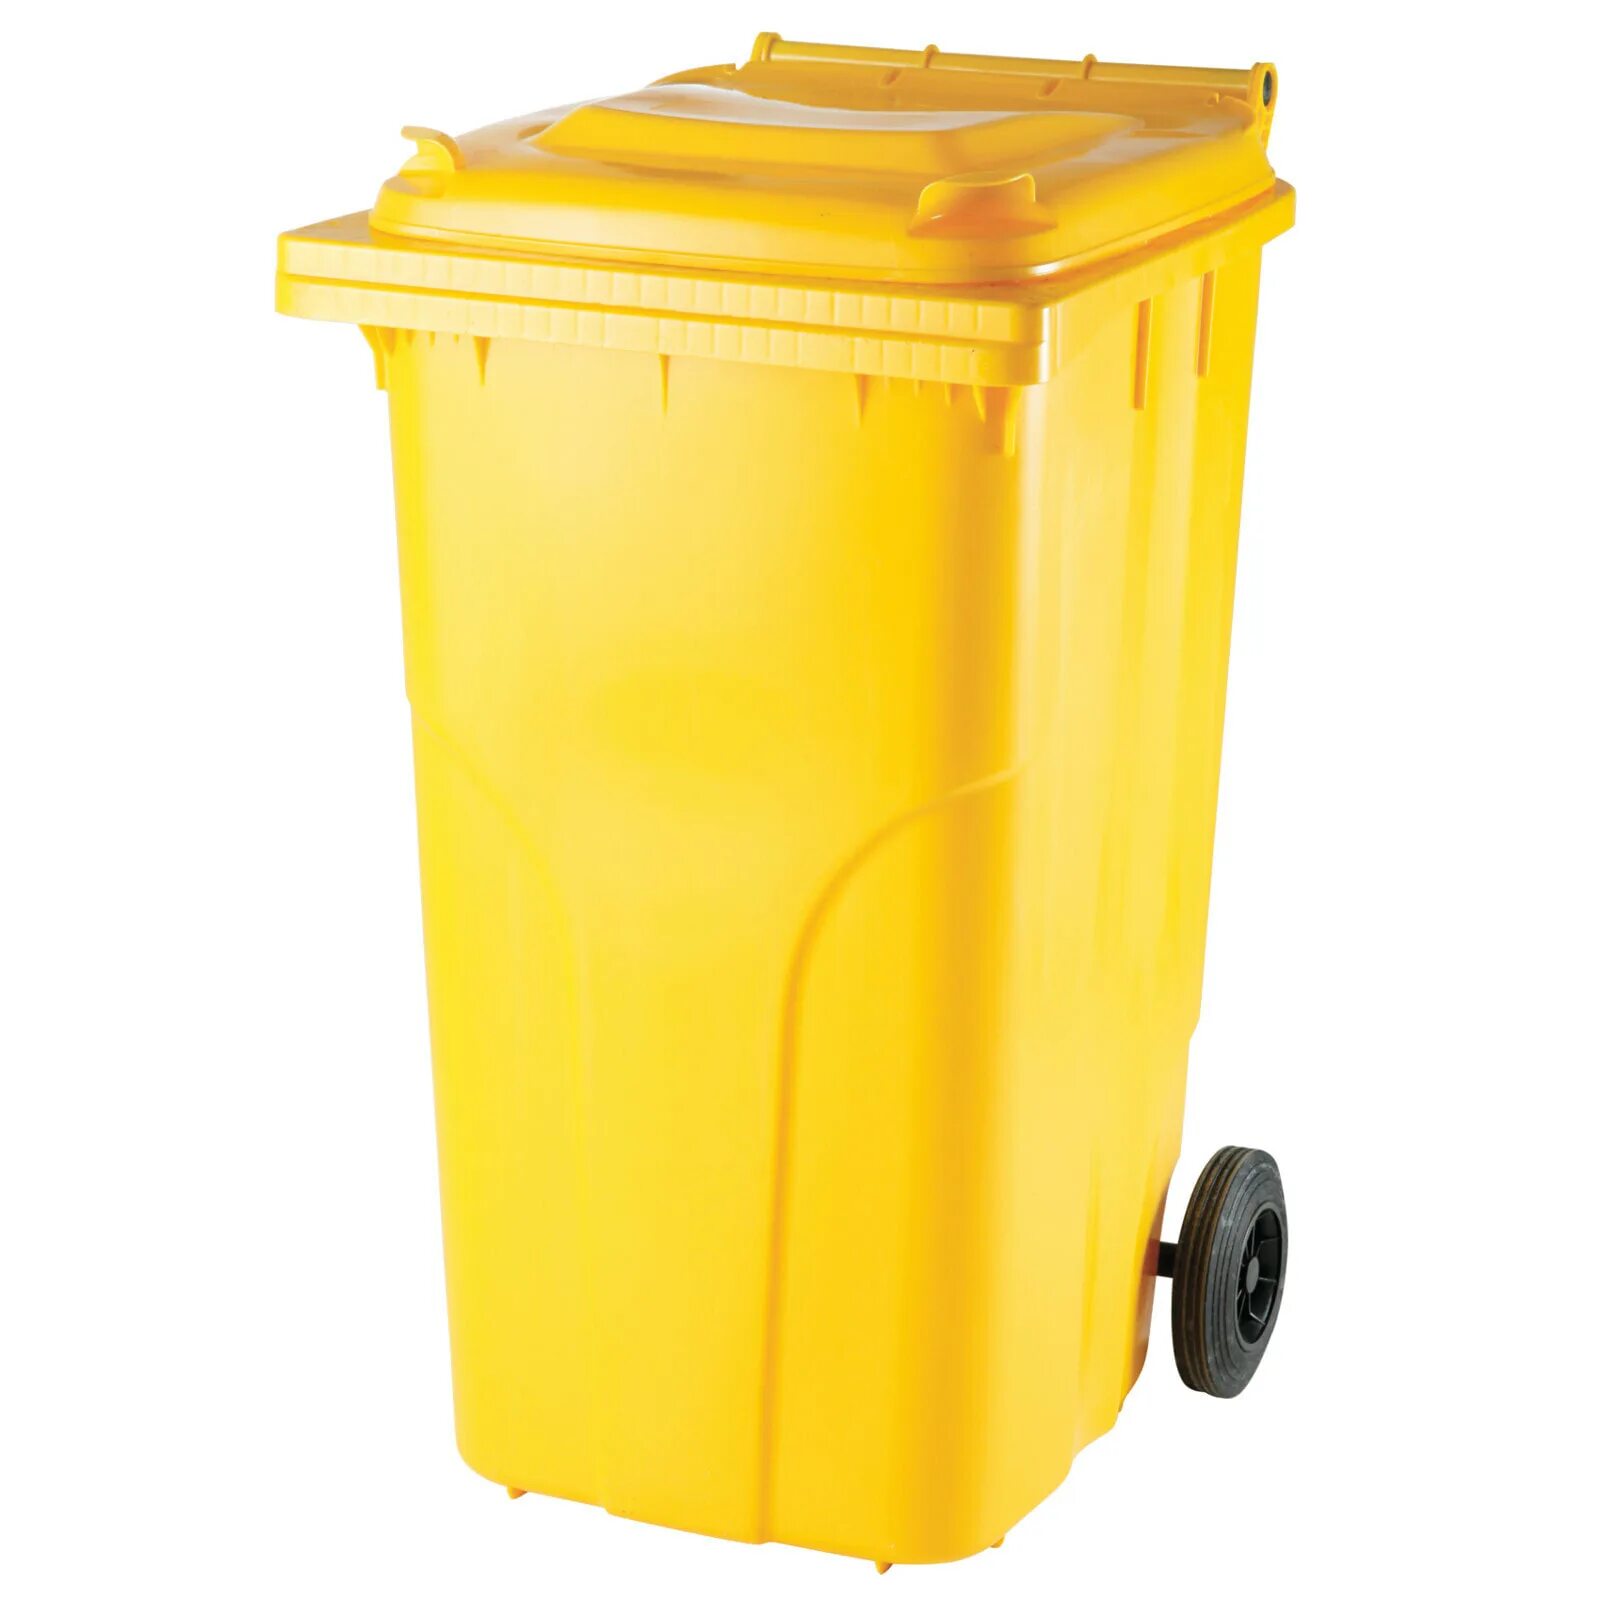 Бак для отходов пластиковый 120л желтый. Контейнер мусорный 240л желтый МКТ. Бак для ТБО 240 Л. Контейнер внутрикорпусной 120 л МКТ-120 С педалью.